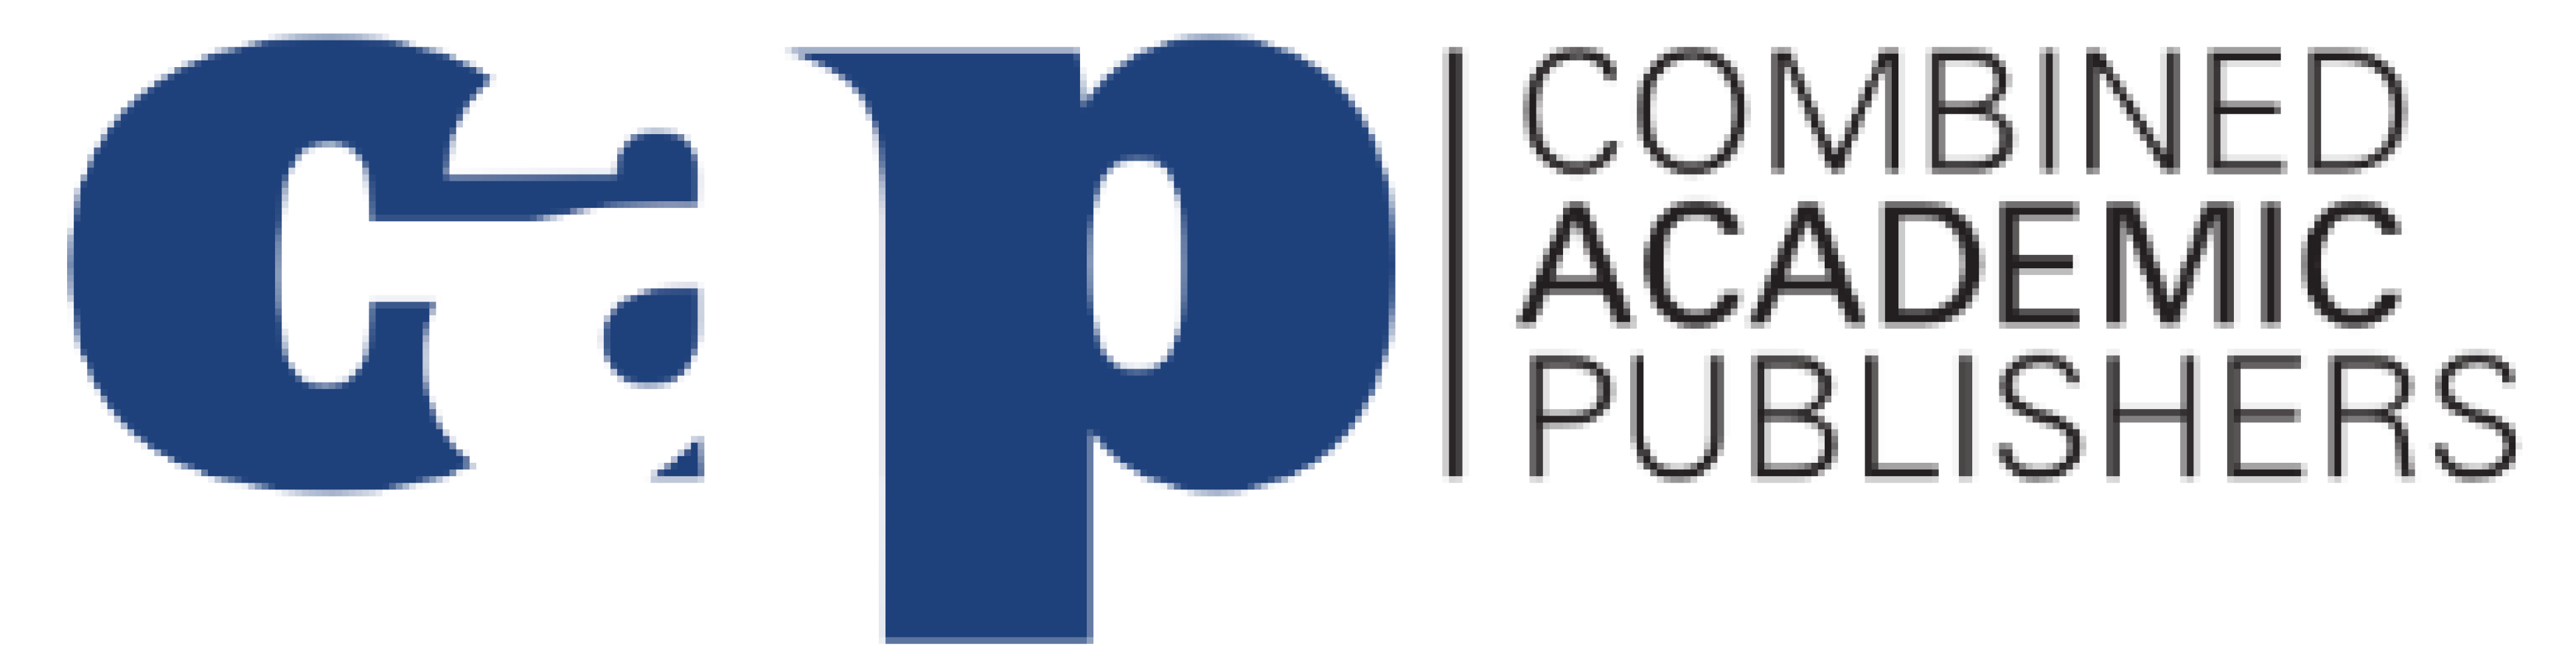 Combined Academic Publishers logo